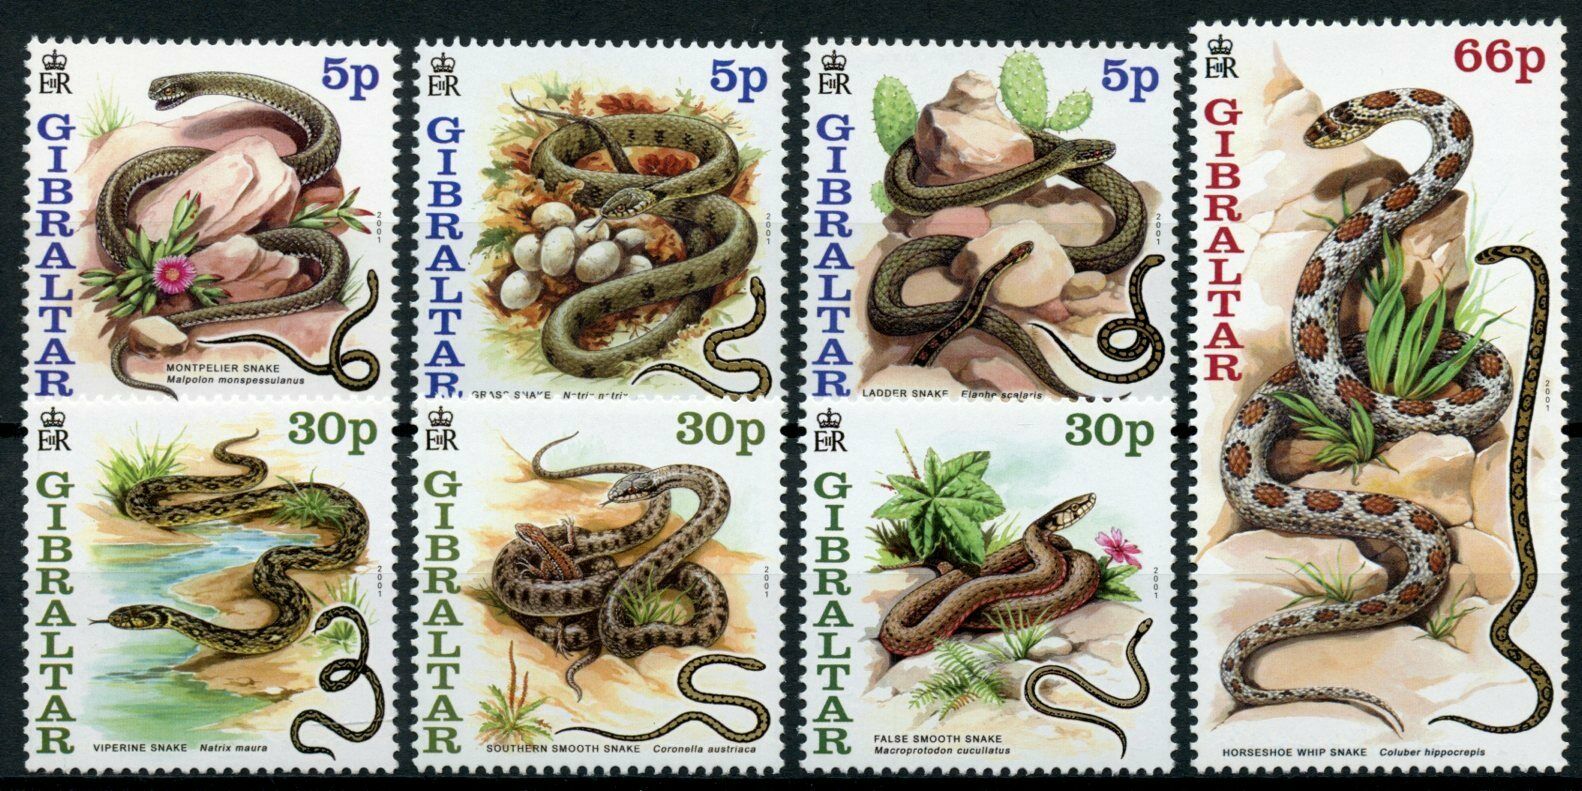 Gibraltar 2001 MNH Snakes Stamps Montpelier Viperine Snake Reptiles 7v Set